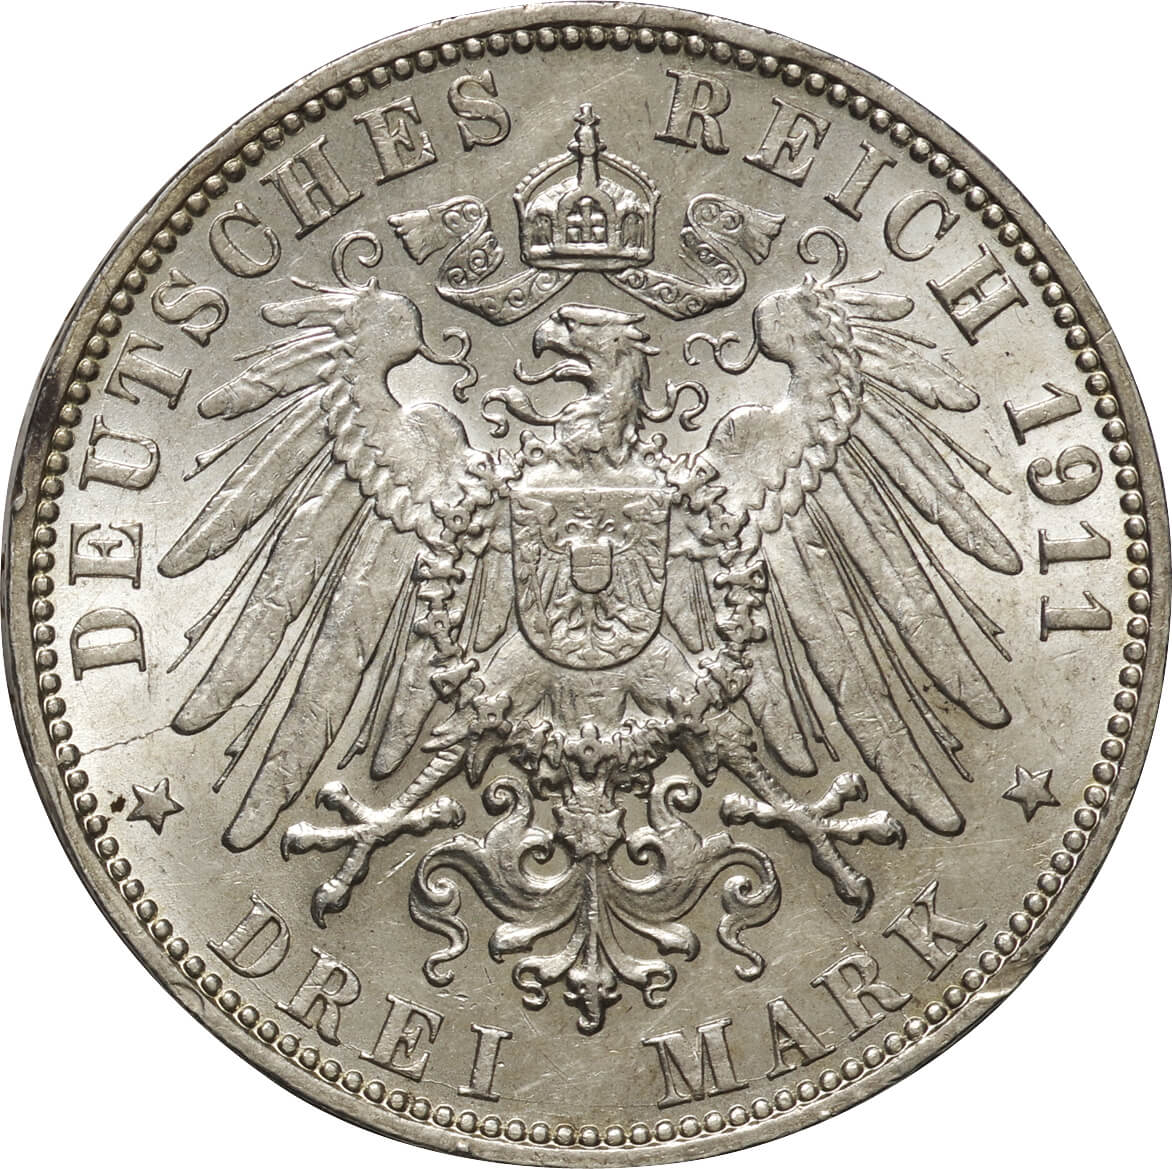 【入荷予定】【NGC】1911J ドイツ ハンブルク 3マルク銀貨 コレクション